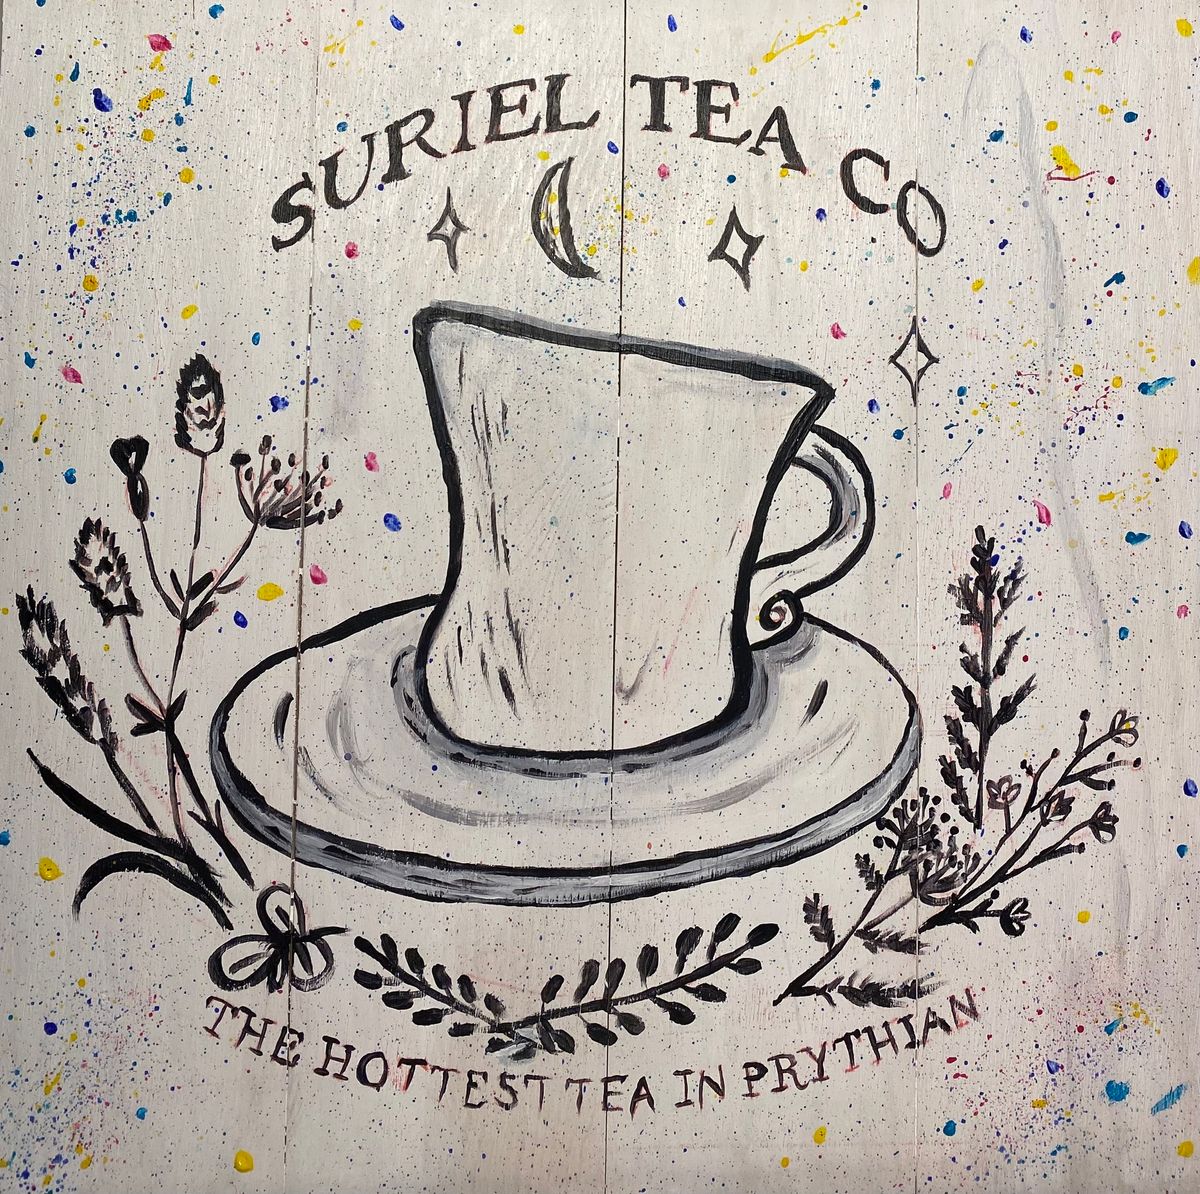 ACOTAR! Sureil Tea Company Sign